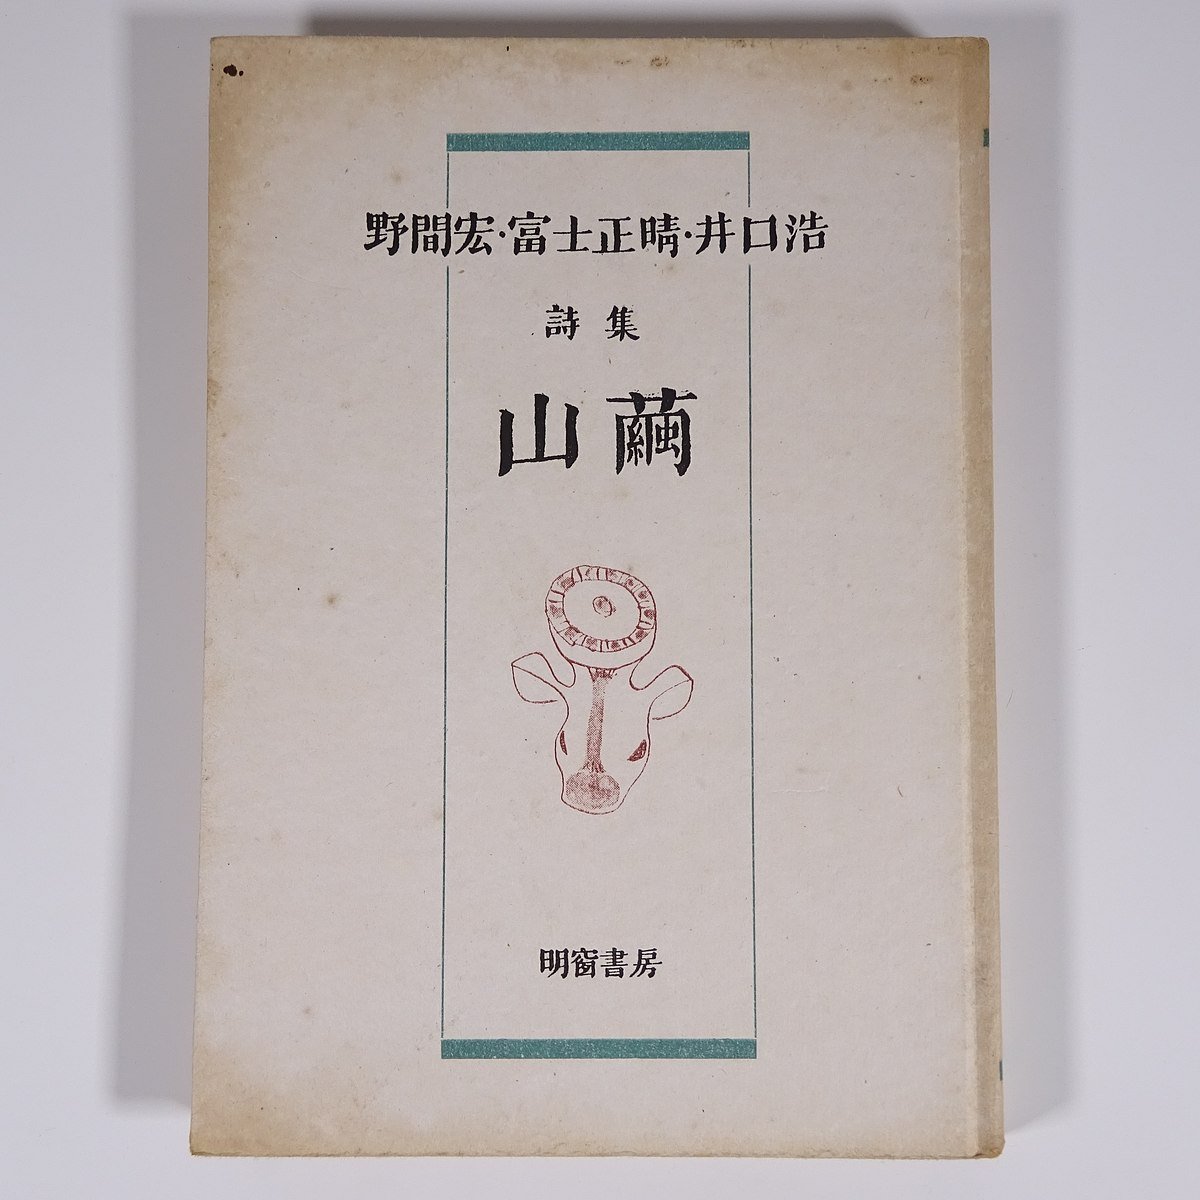  поэзия сборник гора . Noma Hiroshi * Fuji правильный .*... Akira . книжный магазин Showa 2 три год 1948 старинная книга первая версия монография литература литературное искусство поэзия 